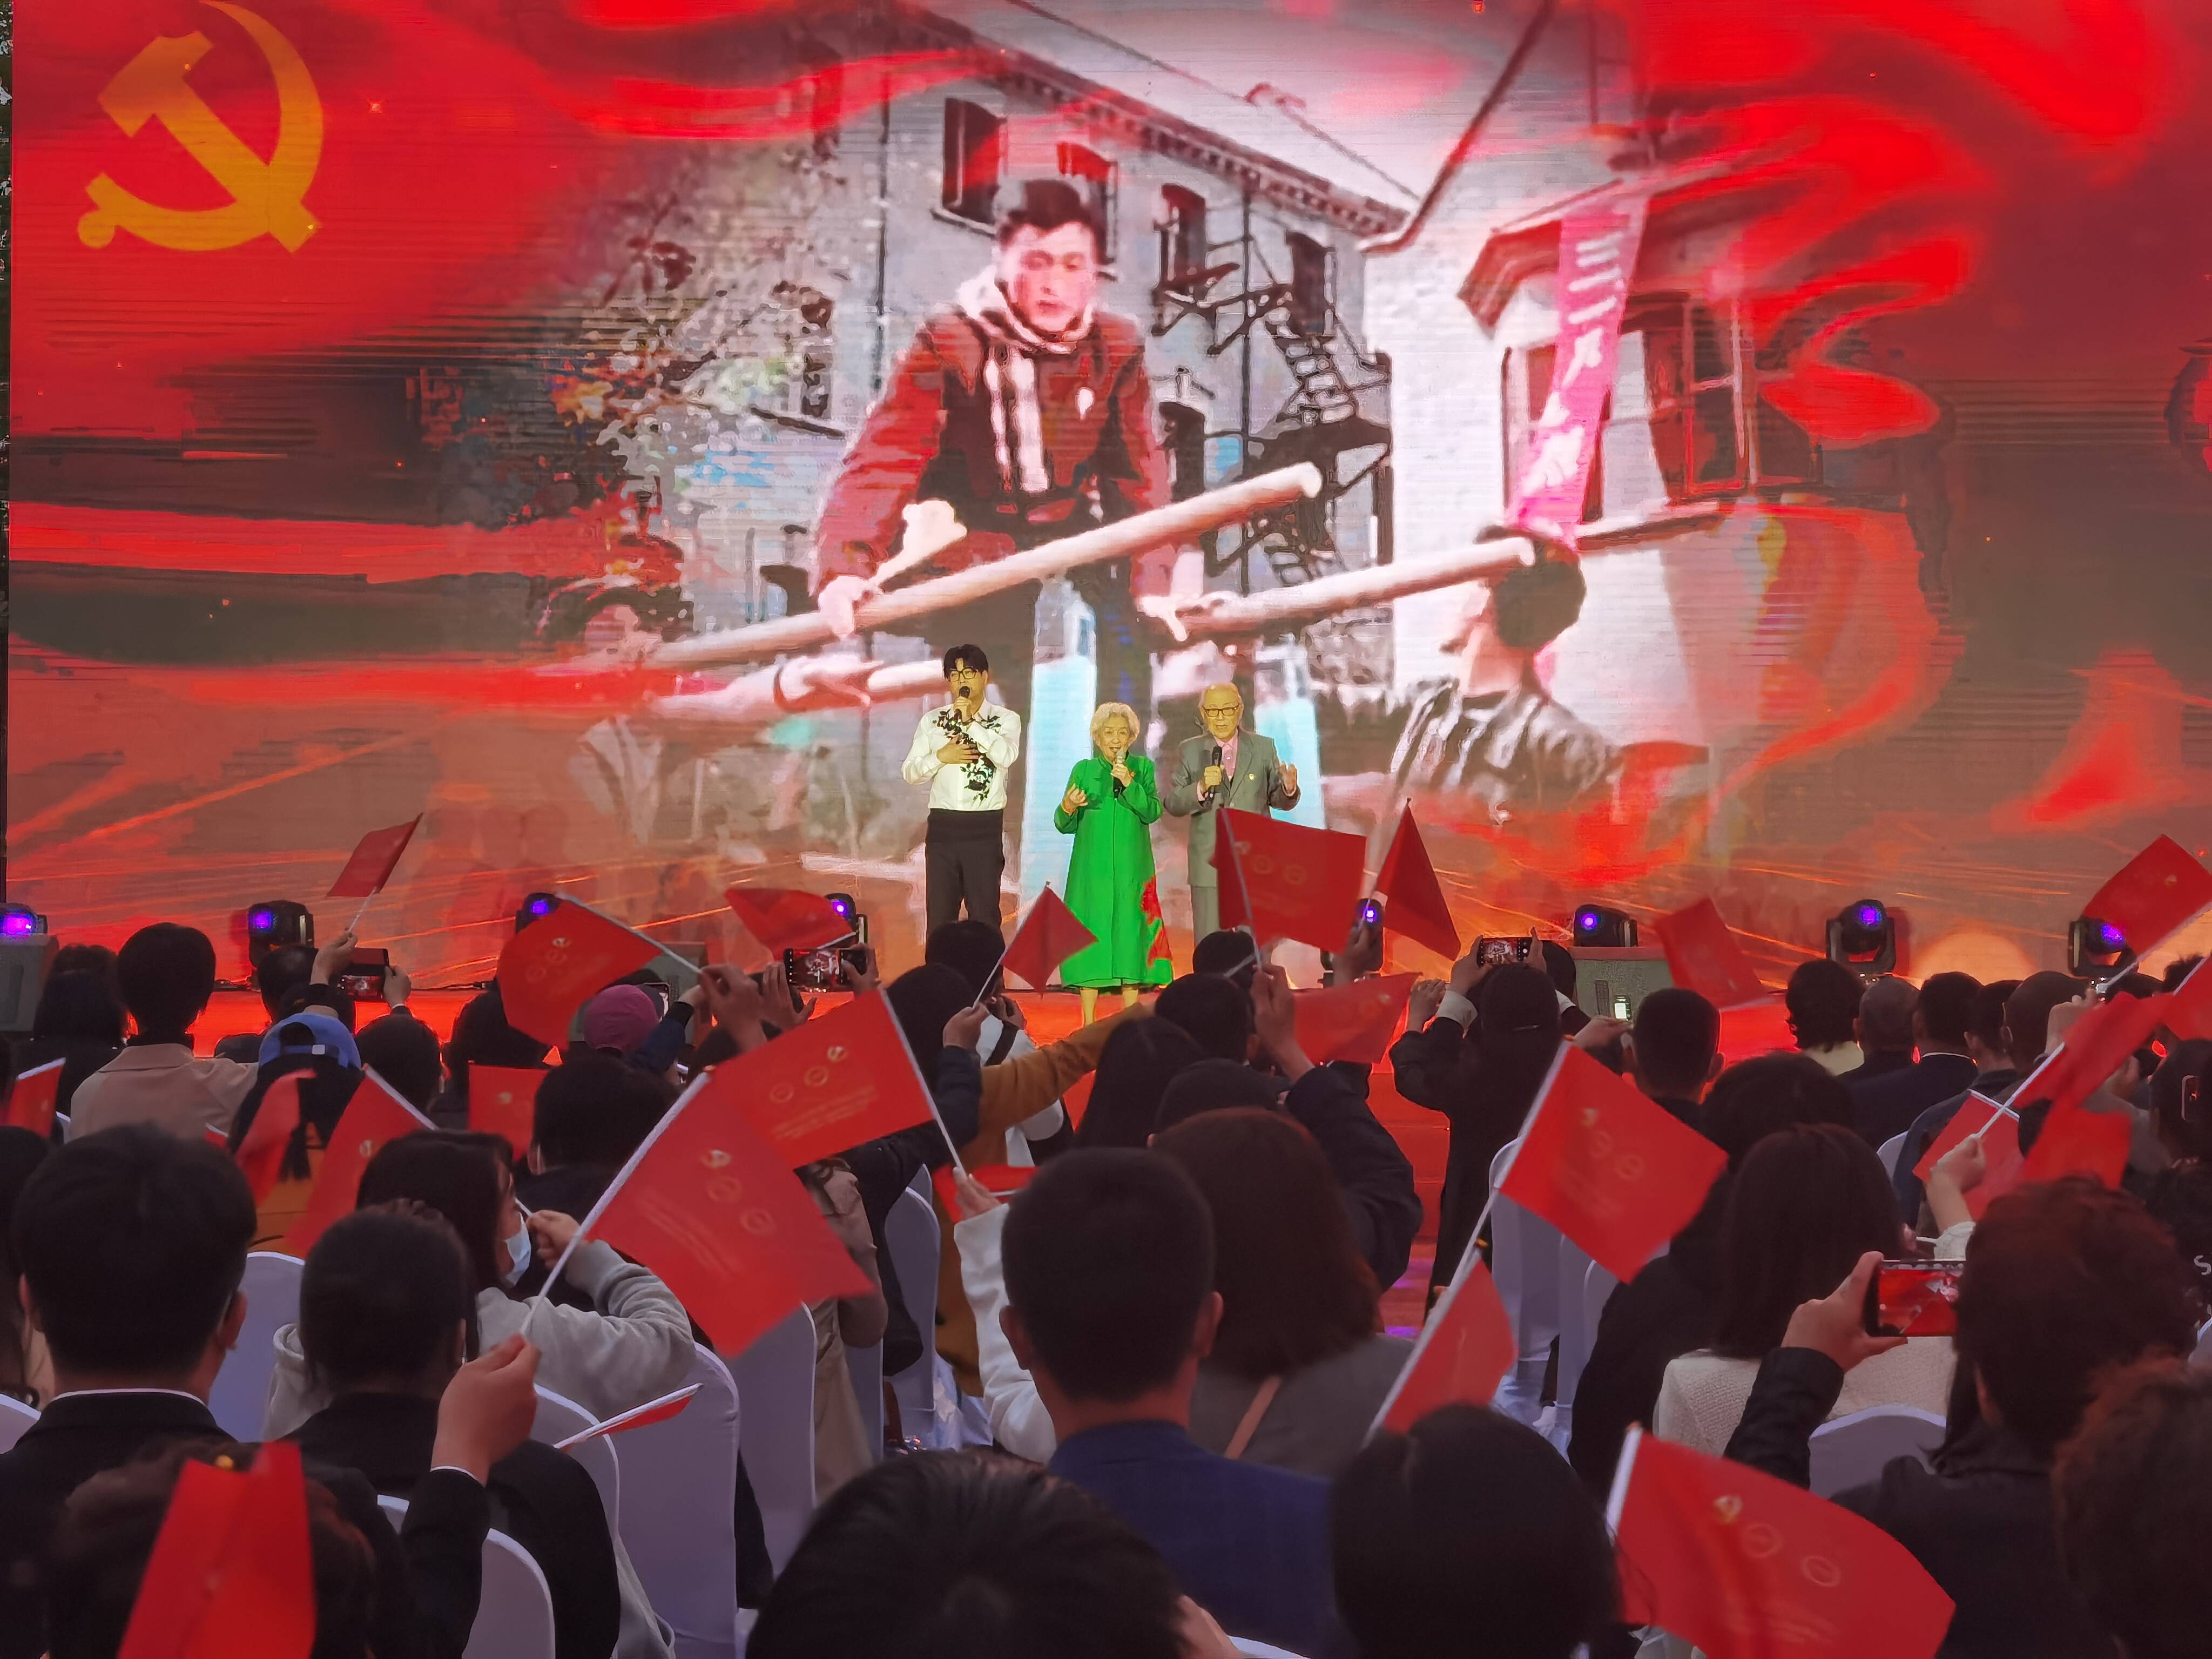 艺术家现场演唱《青春之歌》主题曲《五月的鲜花》。记者 刘腾 摄